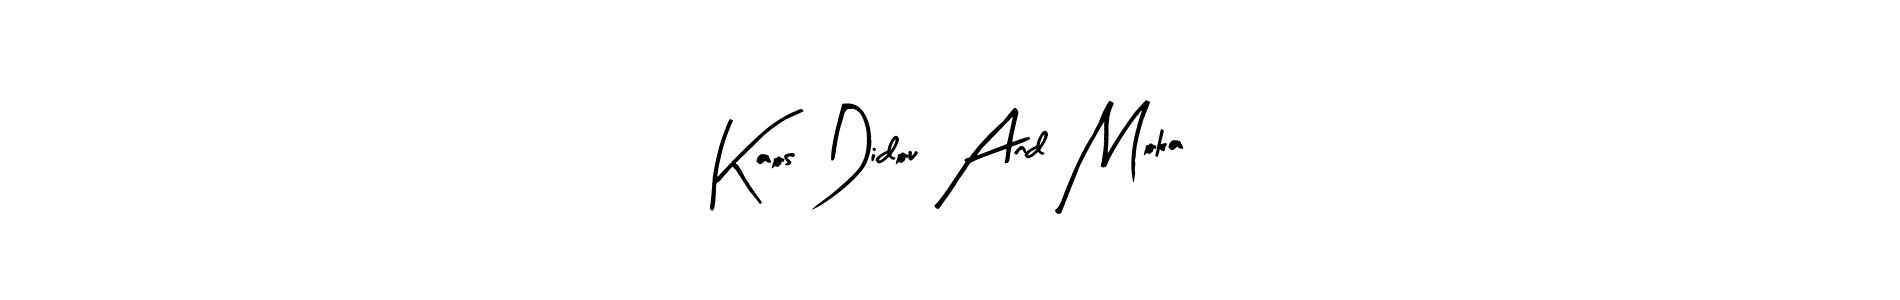 How to Draw Kaos Didou And Moka signature style? Arty Signature is a latest design signature styles for name Kaos Didou And Moka. Kaos Didou And Moka signature style 8 images and pictures png